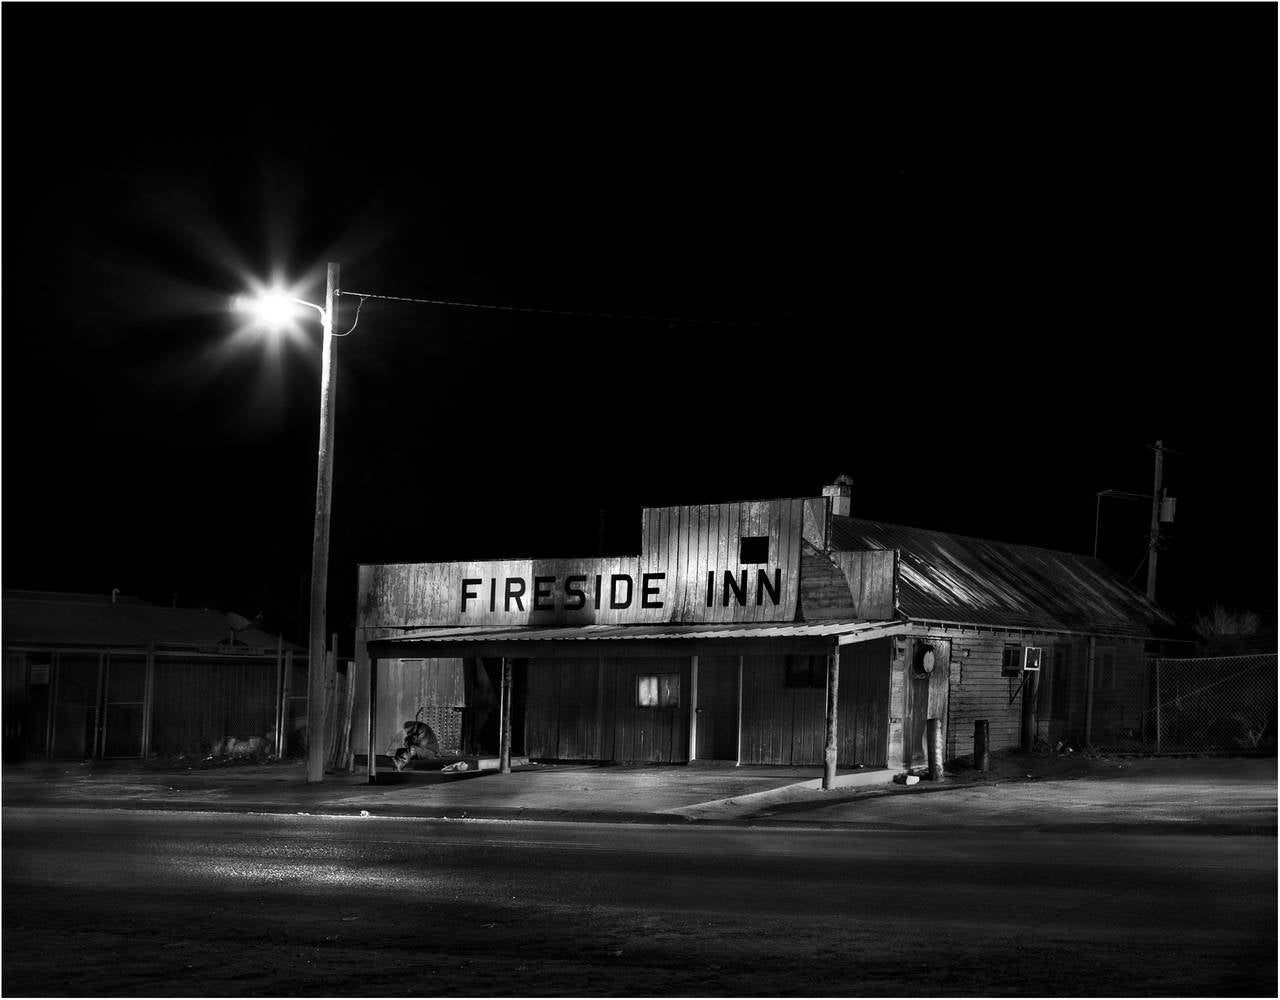 Fireside Inn, Whiteclay, Nebraska